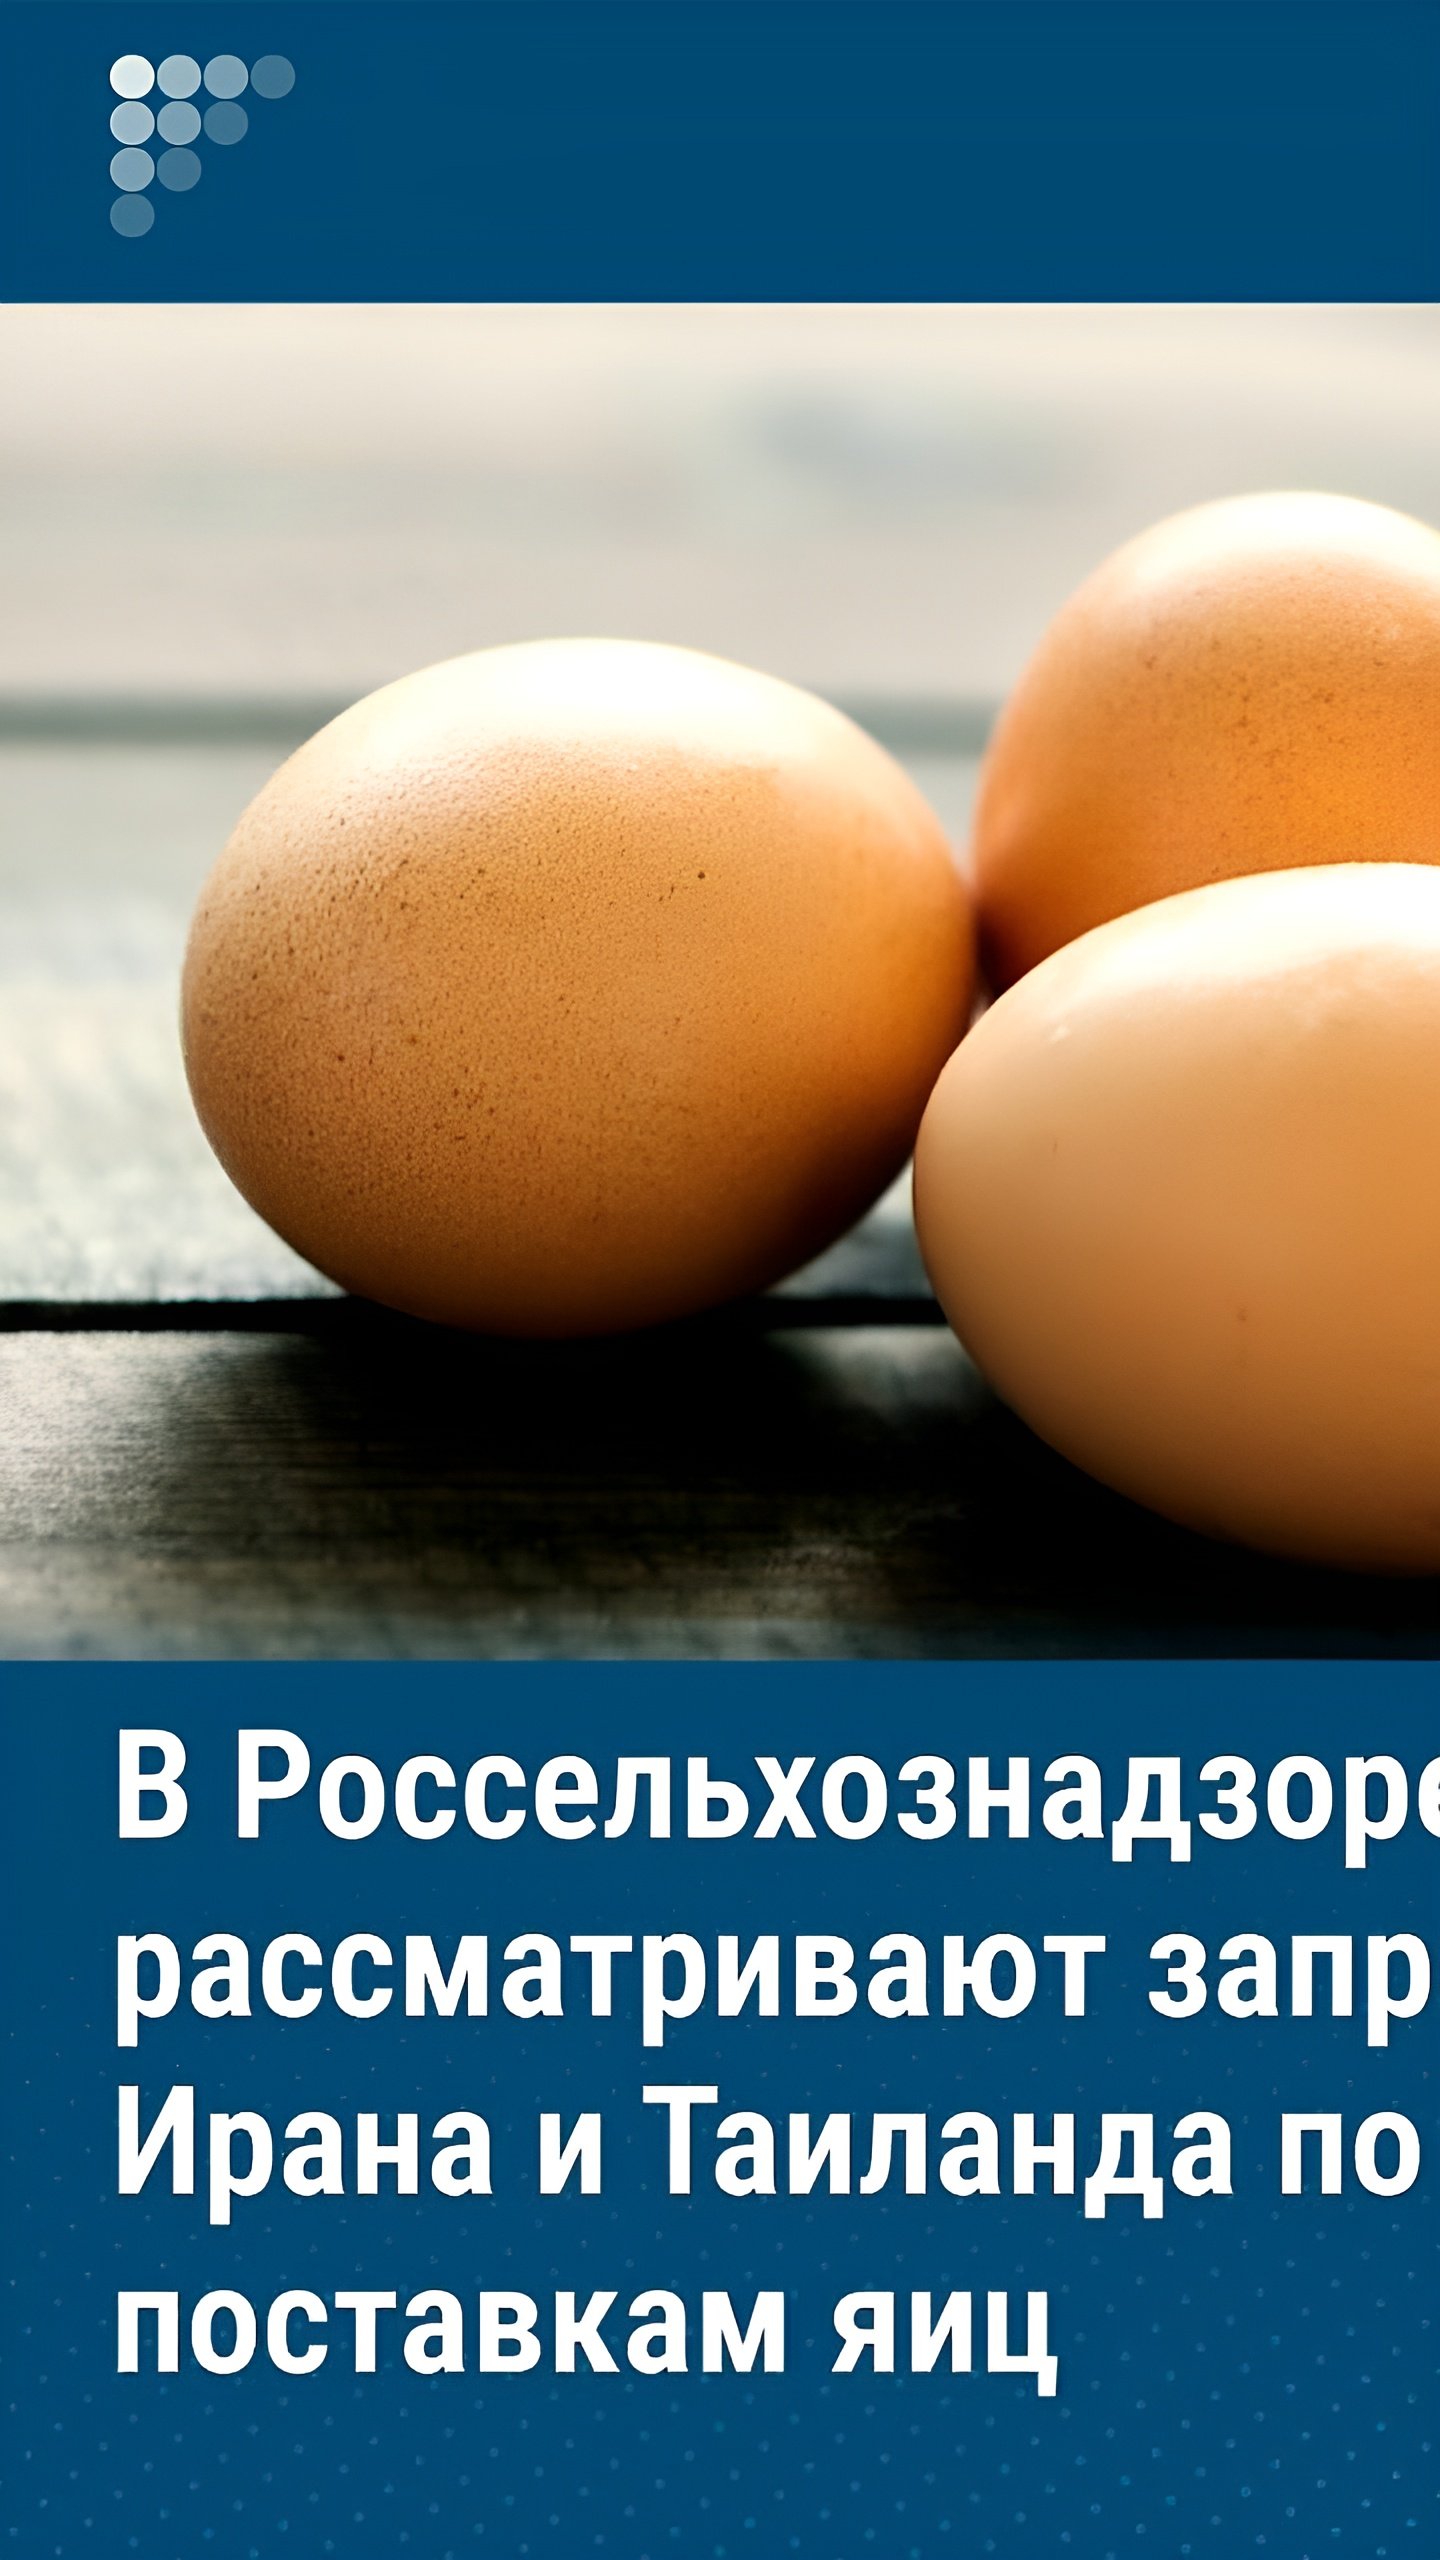 Россельхознадзор рассматривает обращения от Ирана, Вьетнама и Таиланда по поставкам яиц в Россию